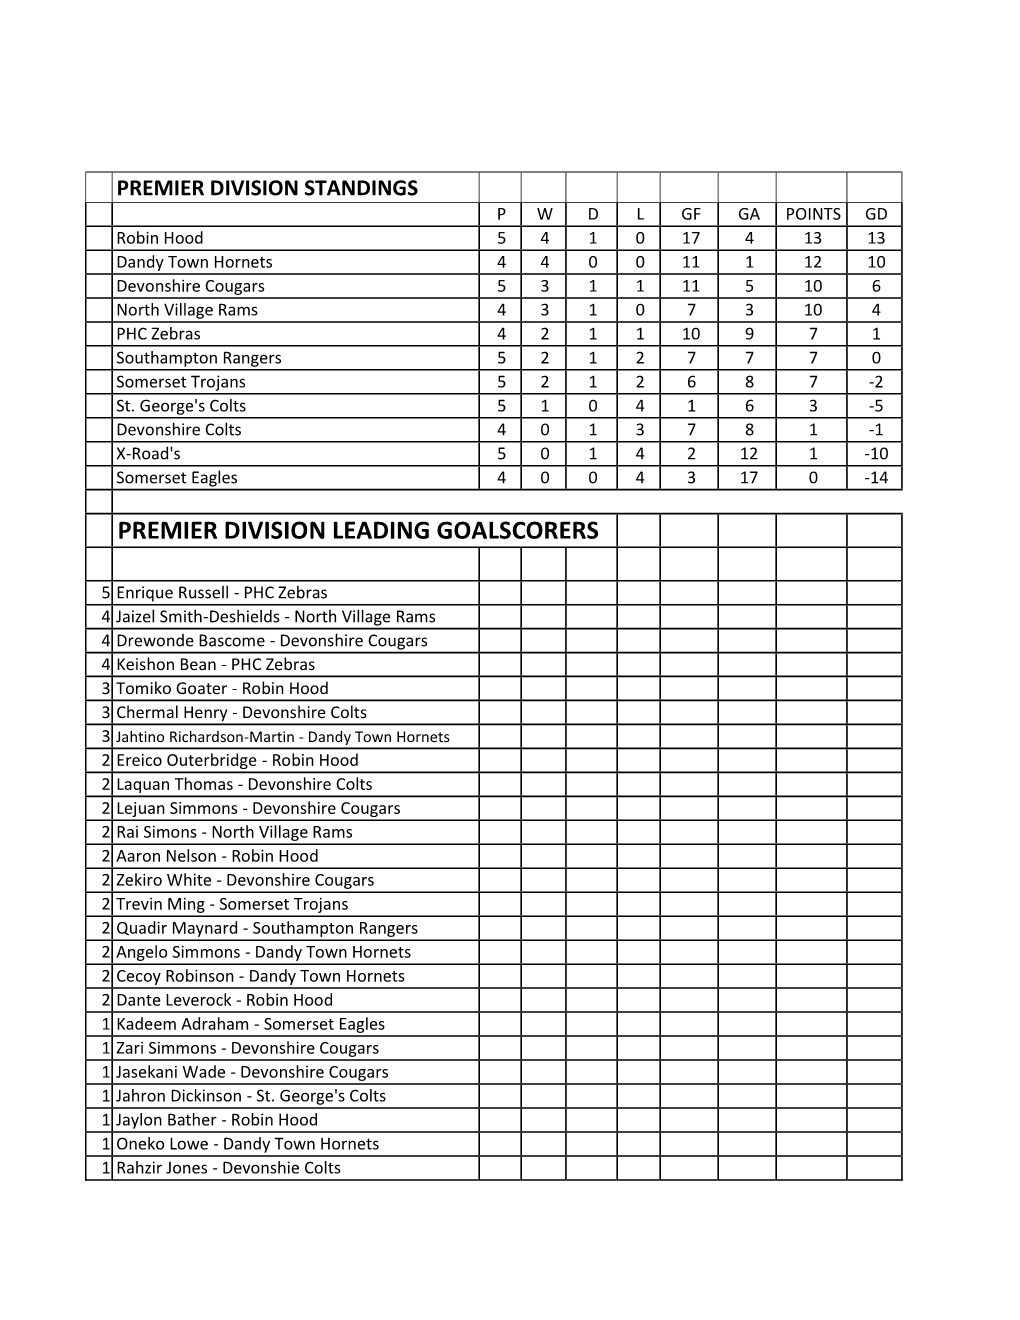 Premier Division Leading Goalscorers